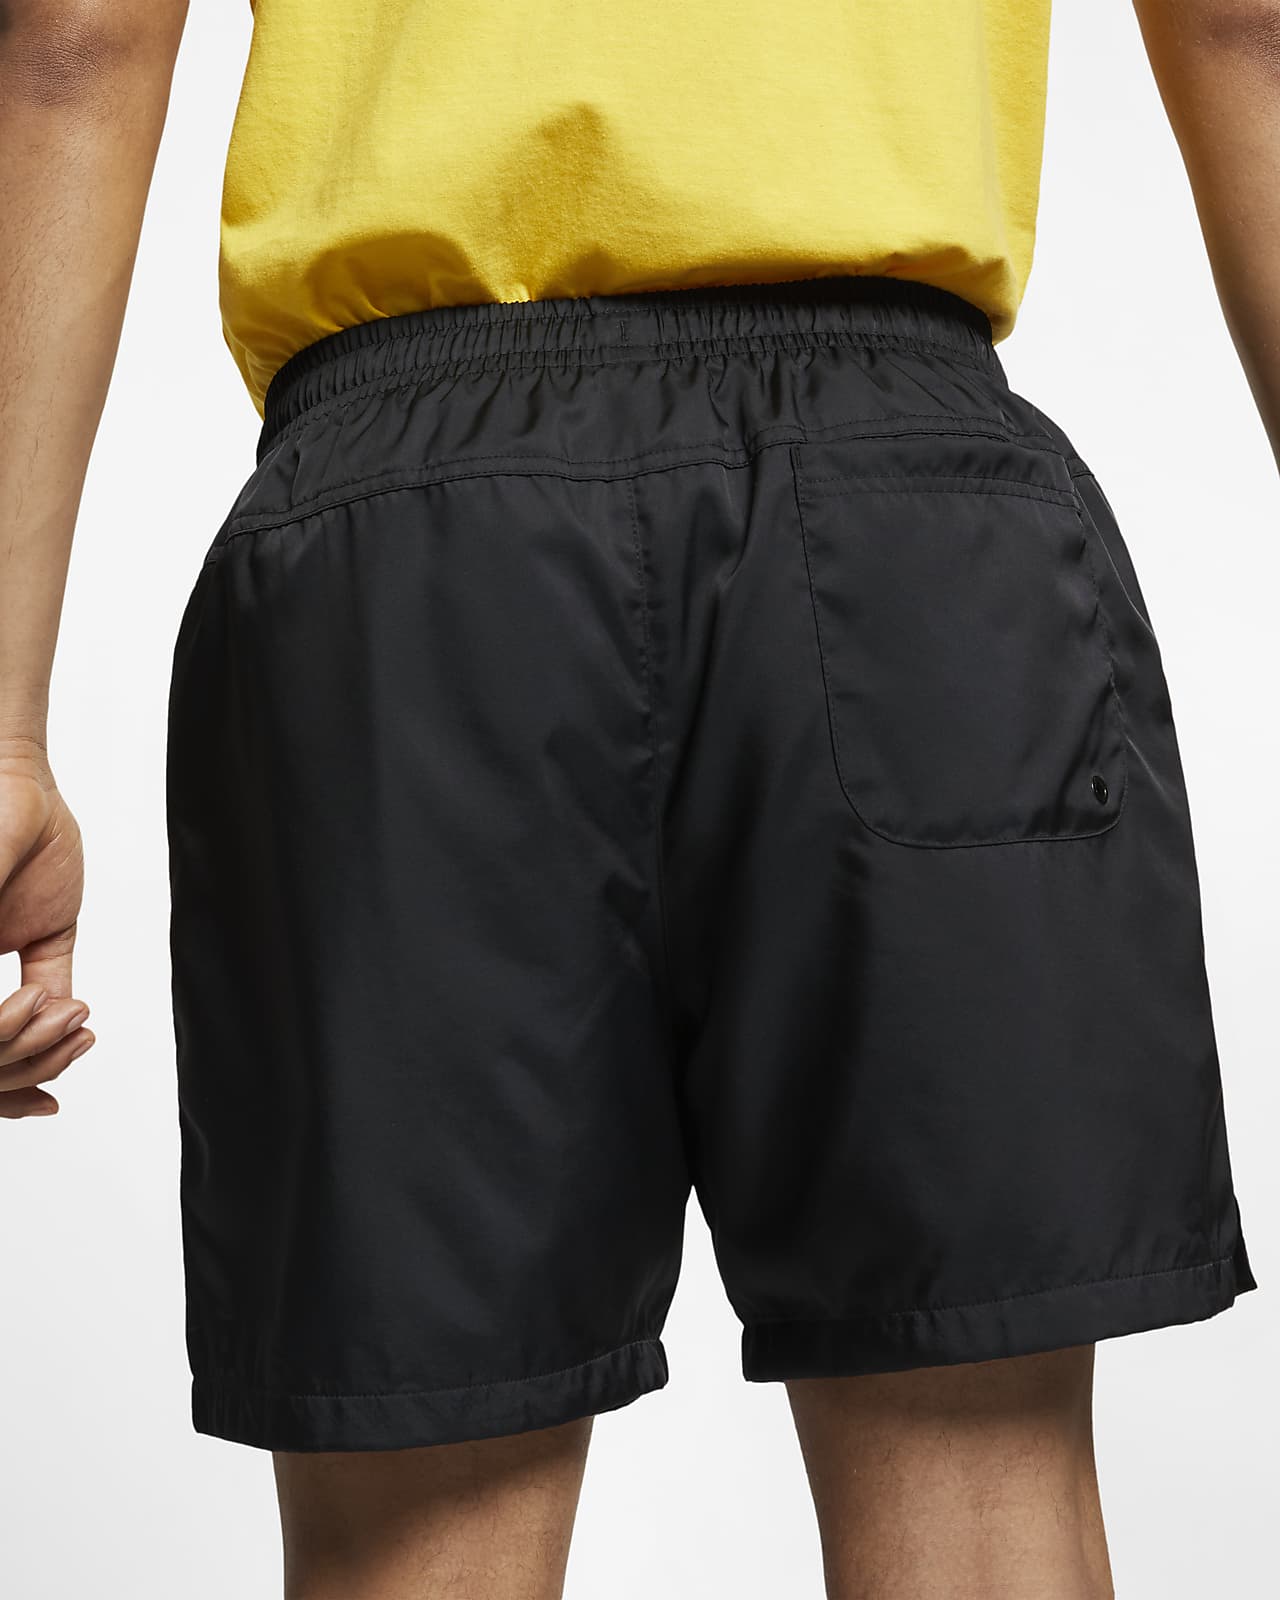 black nike short shorts